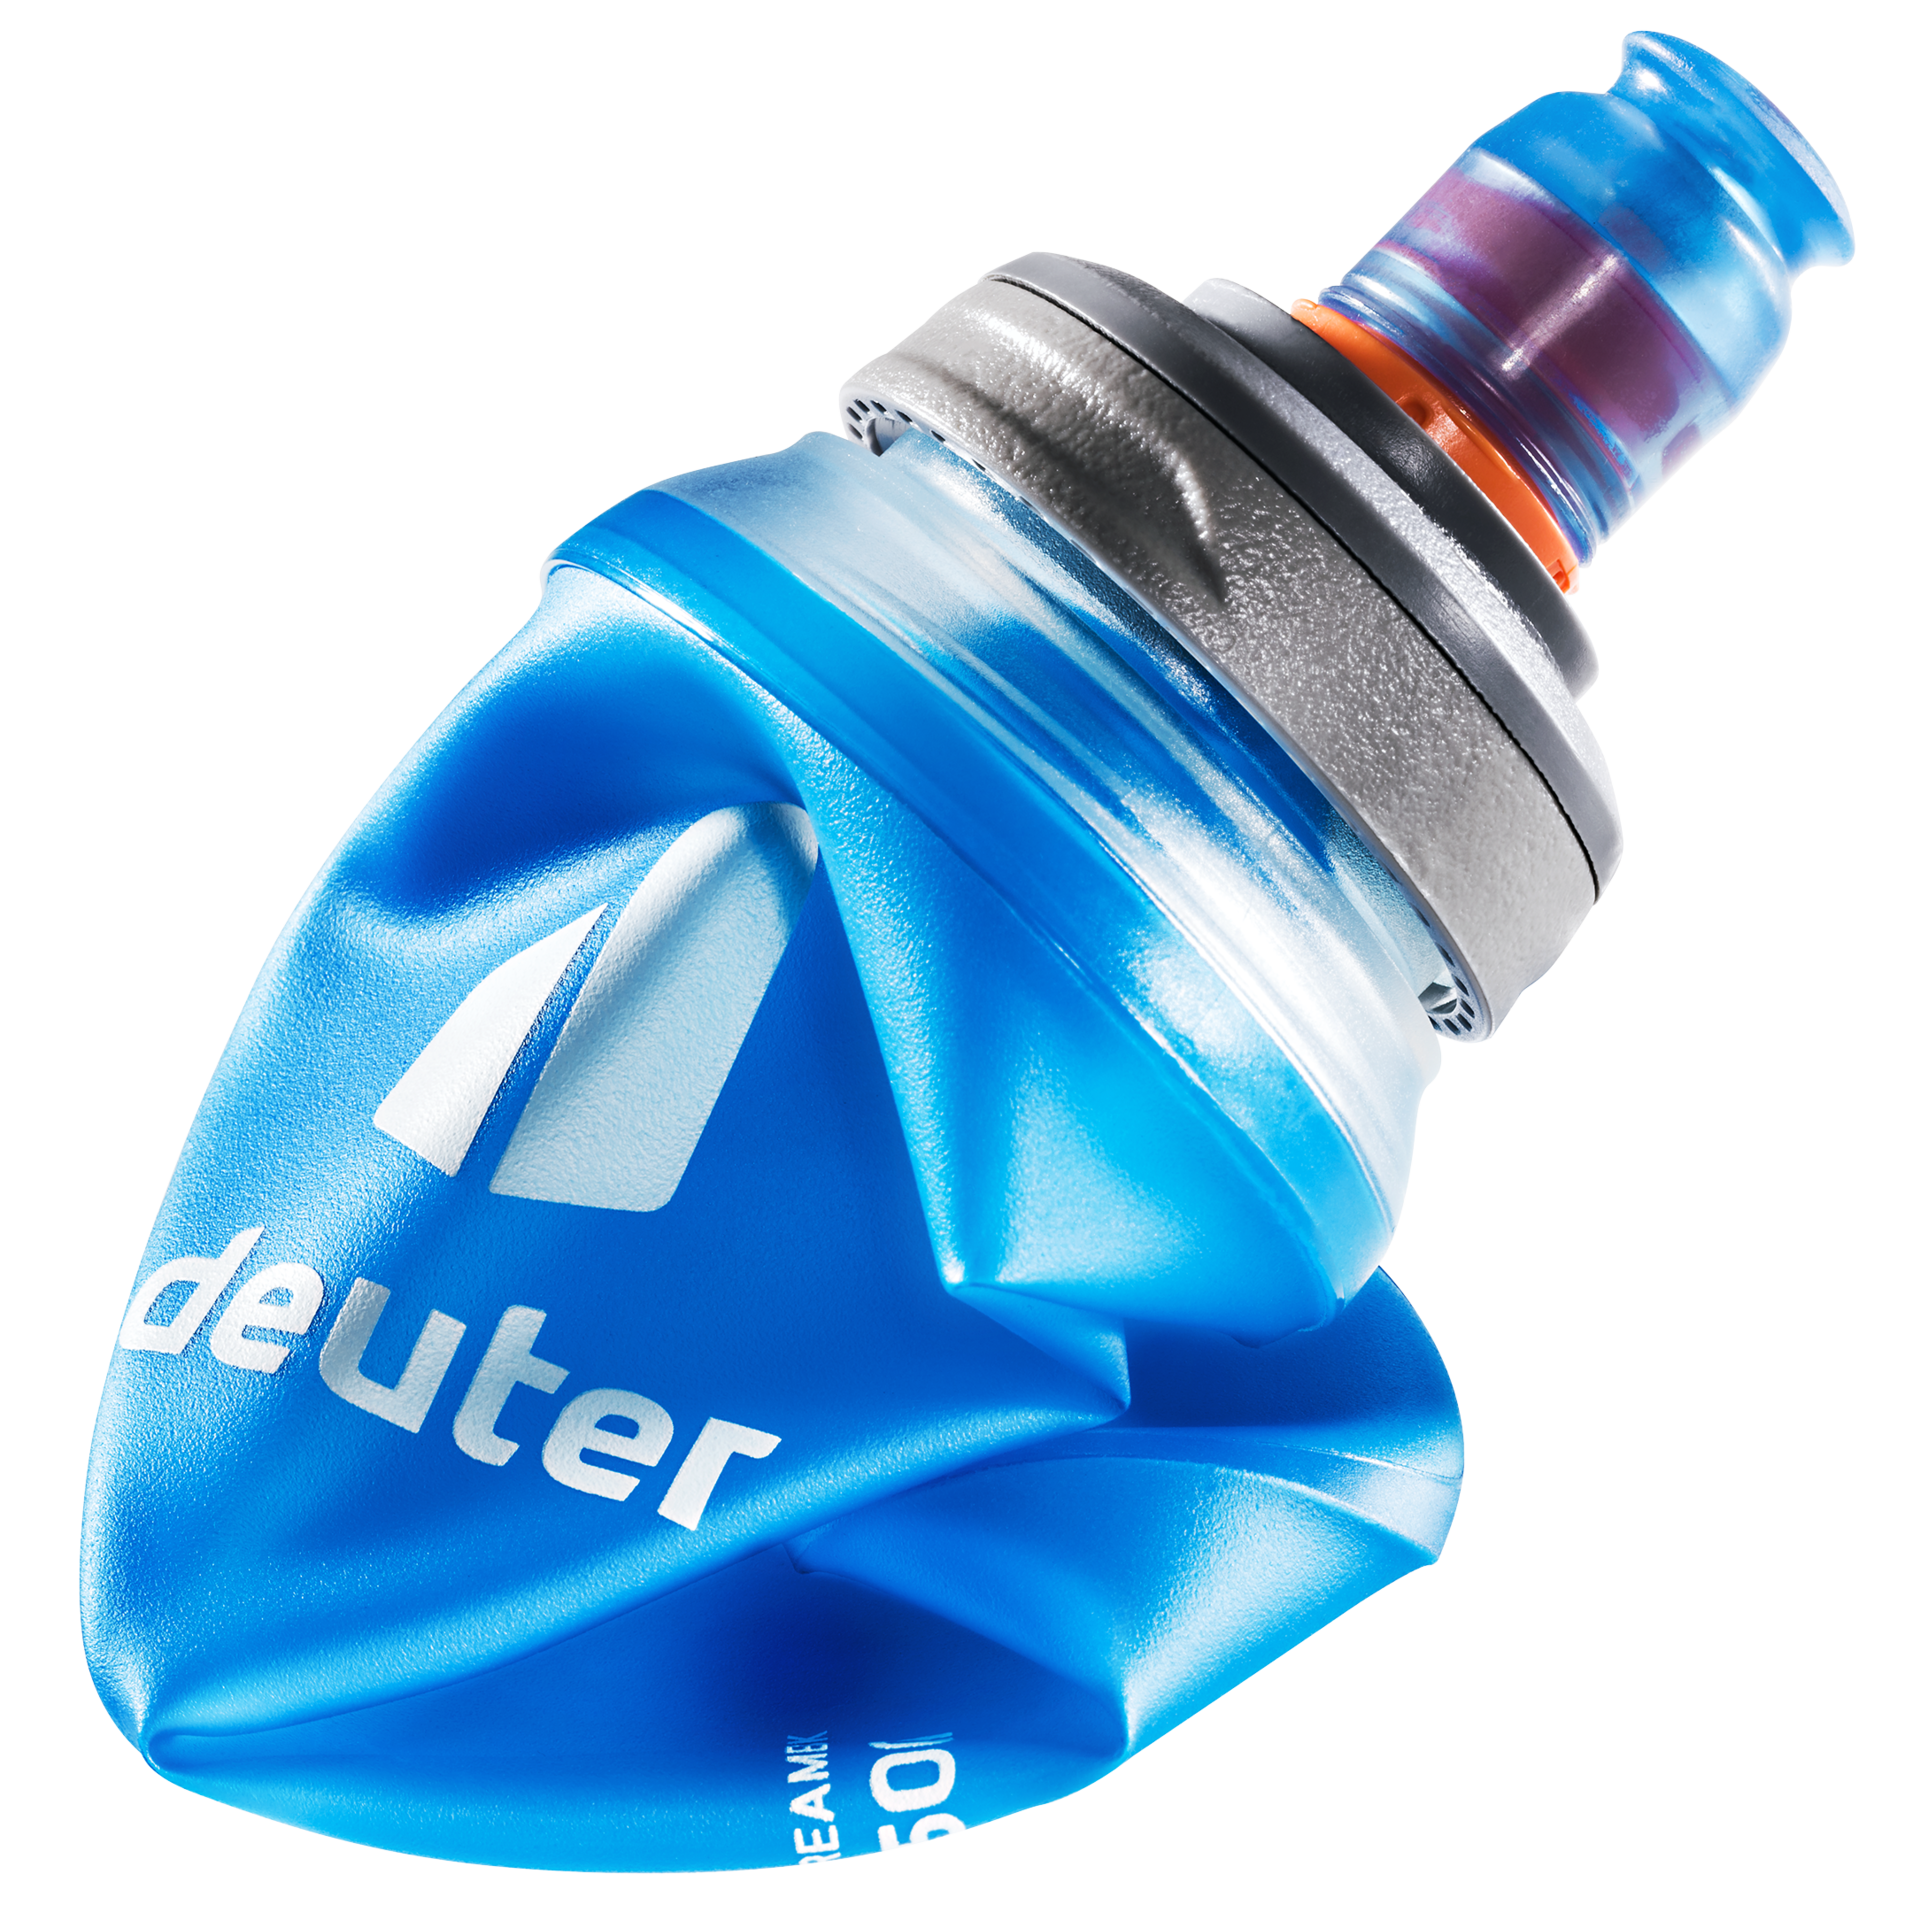 Helix 500ml Water Bottle